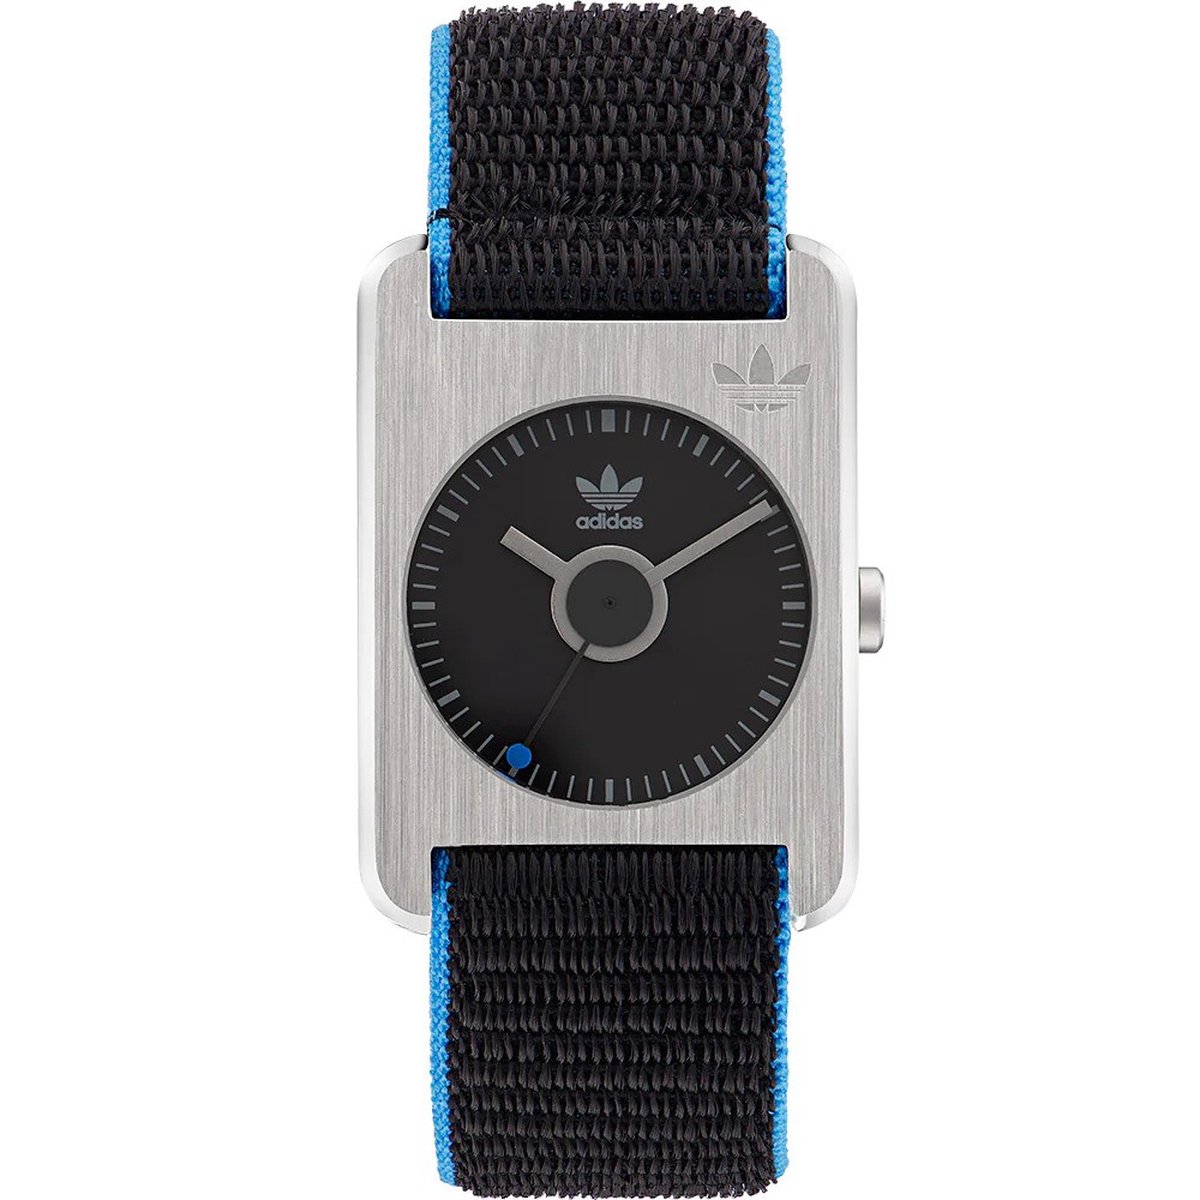 Adidas Retro Pop One AOST22534 Horloge - Textiel - Zwart - Ø 37 mm